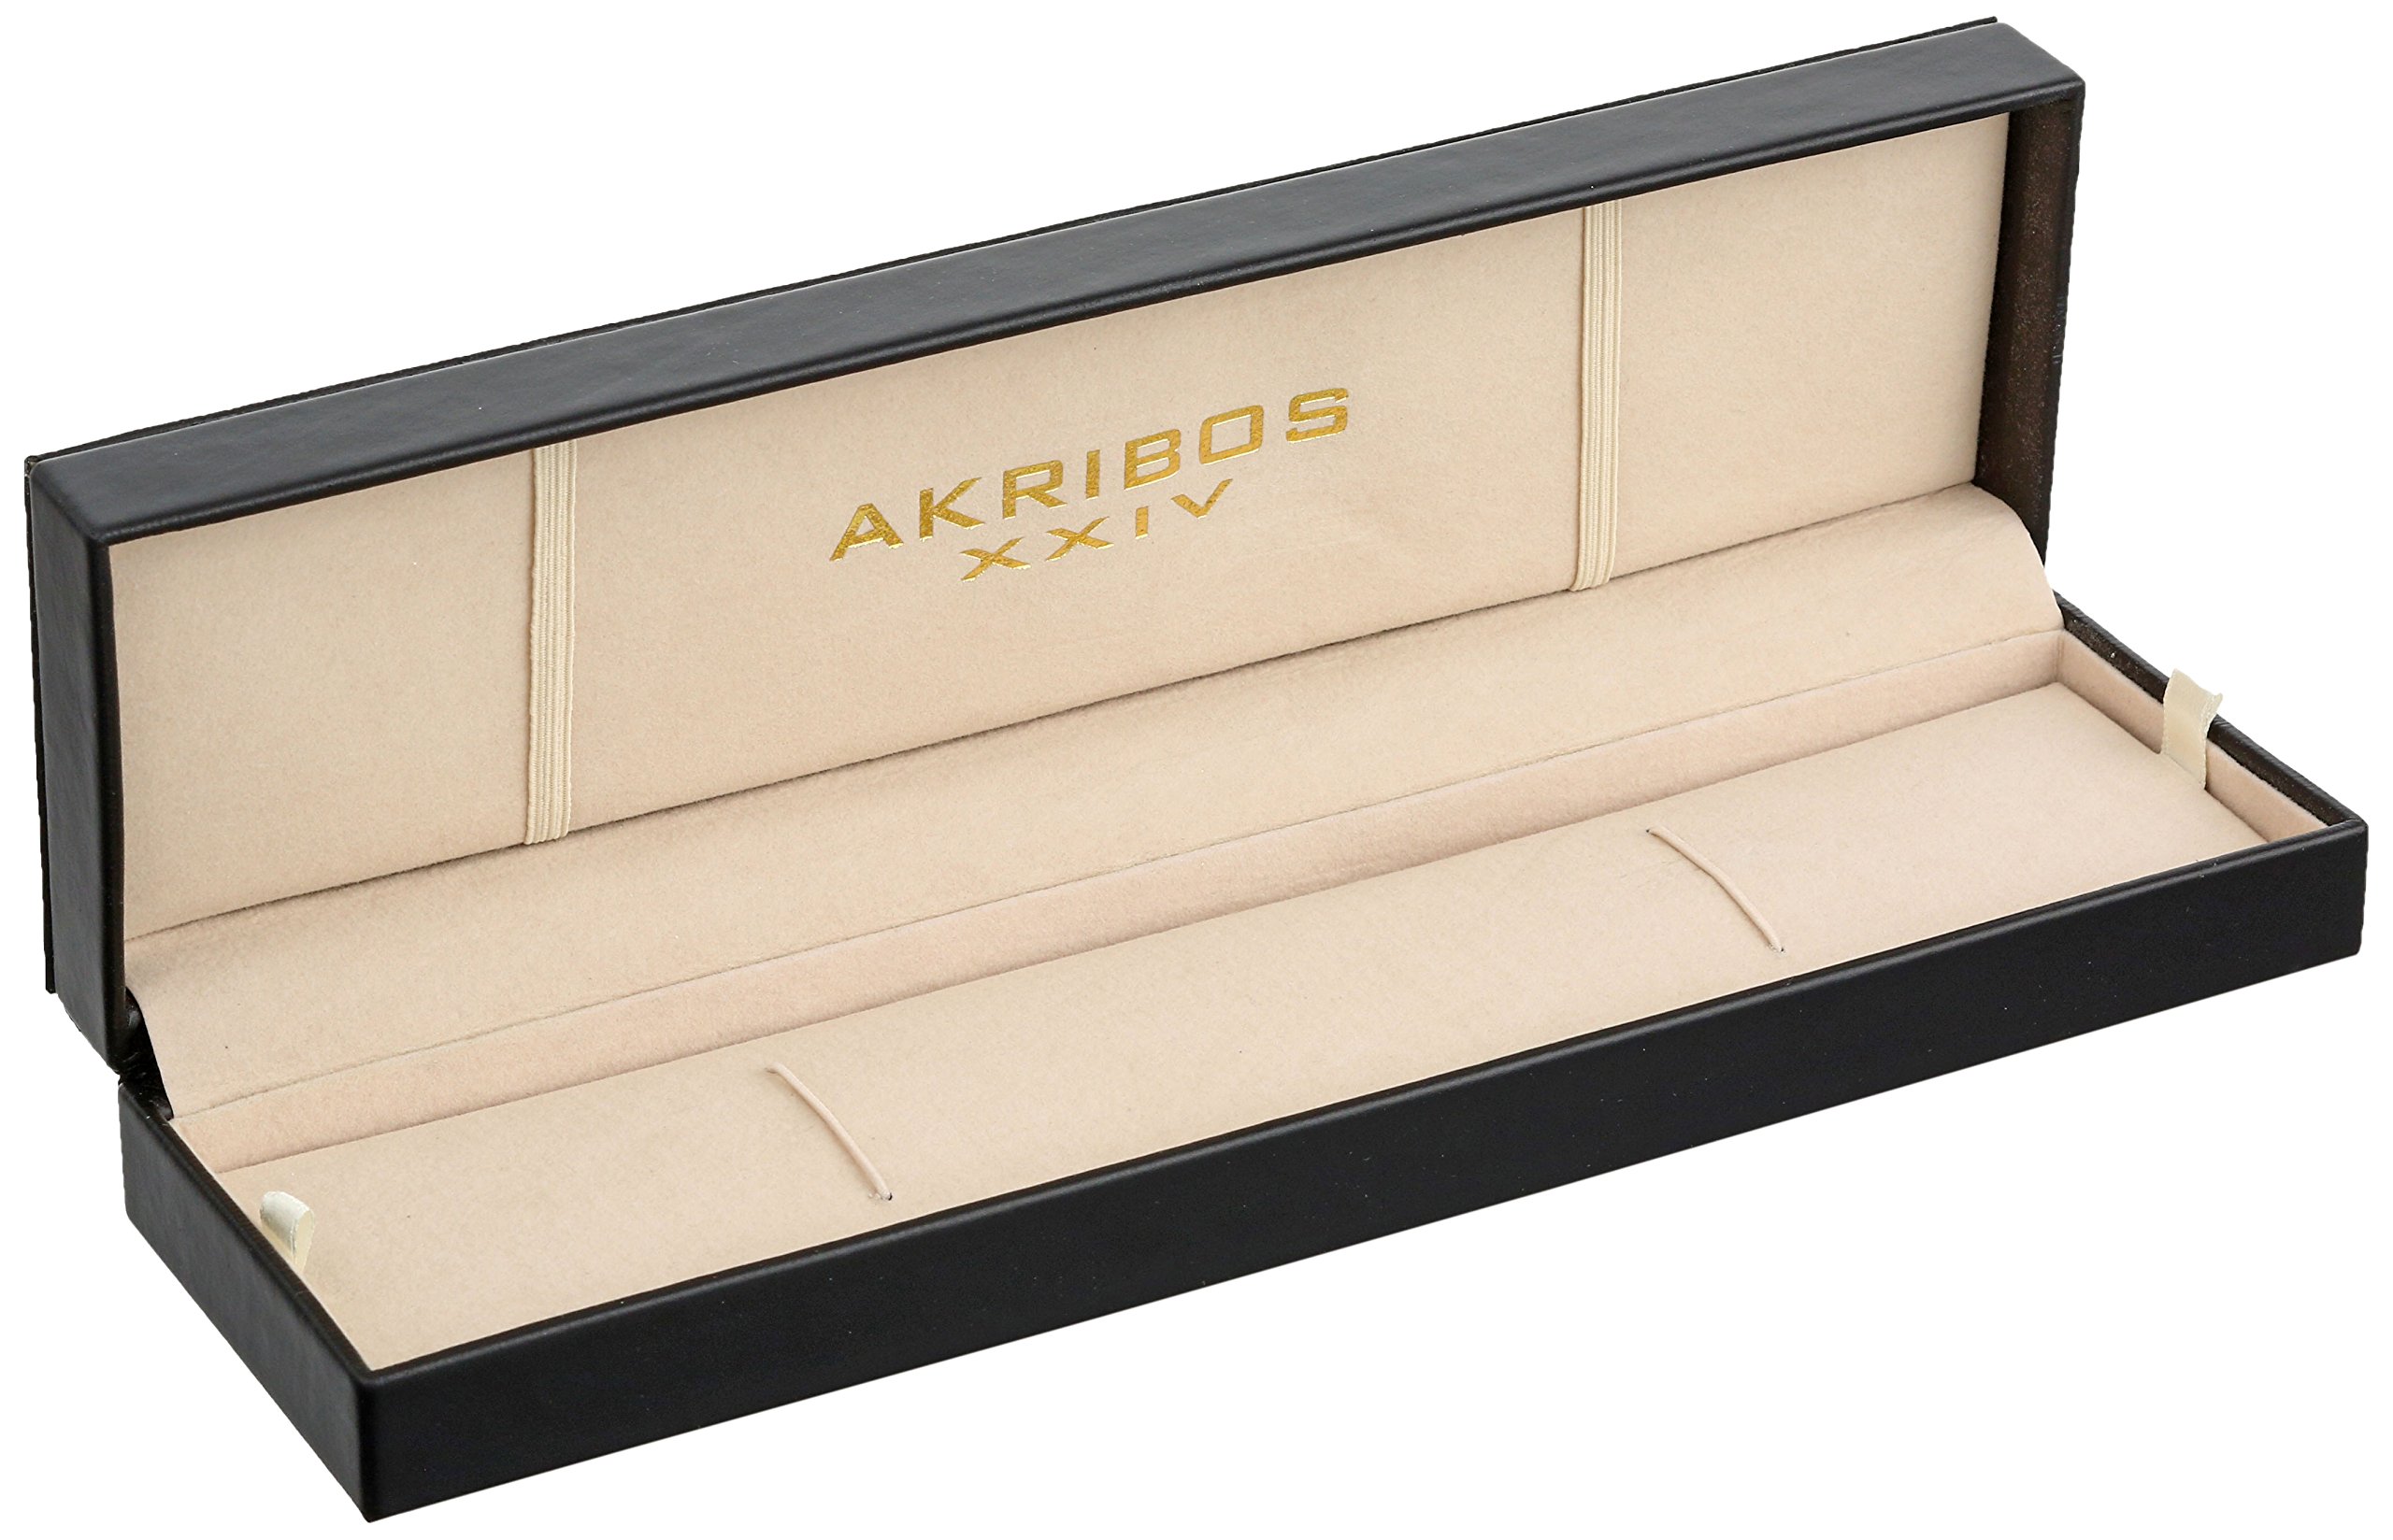 Akribos XXIV Women's AK569WT Lady Diamond Dual Time Leather Strap Watch